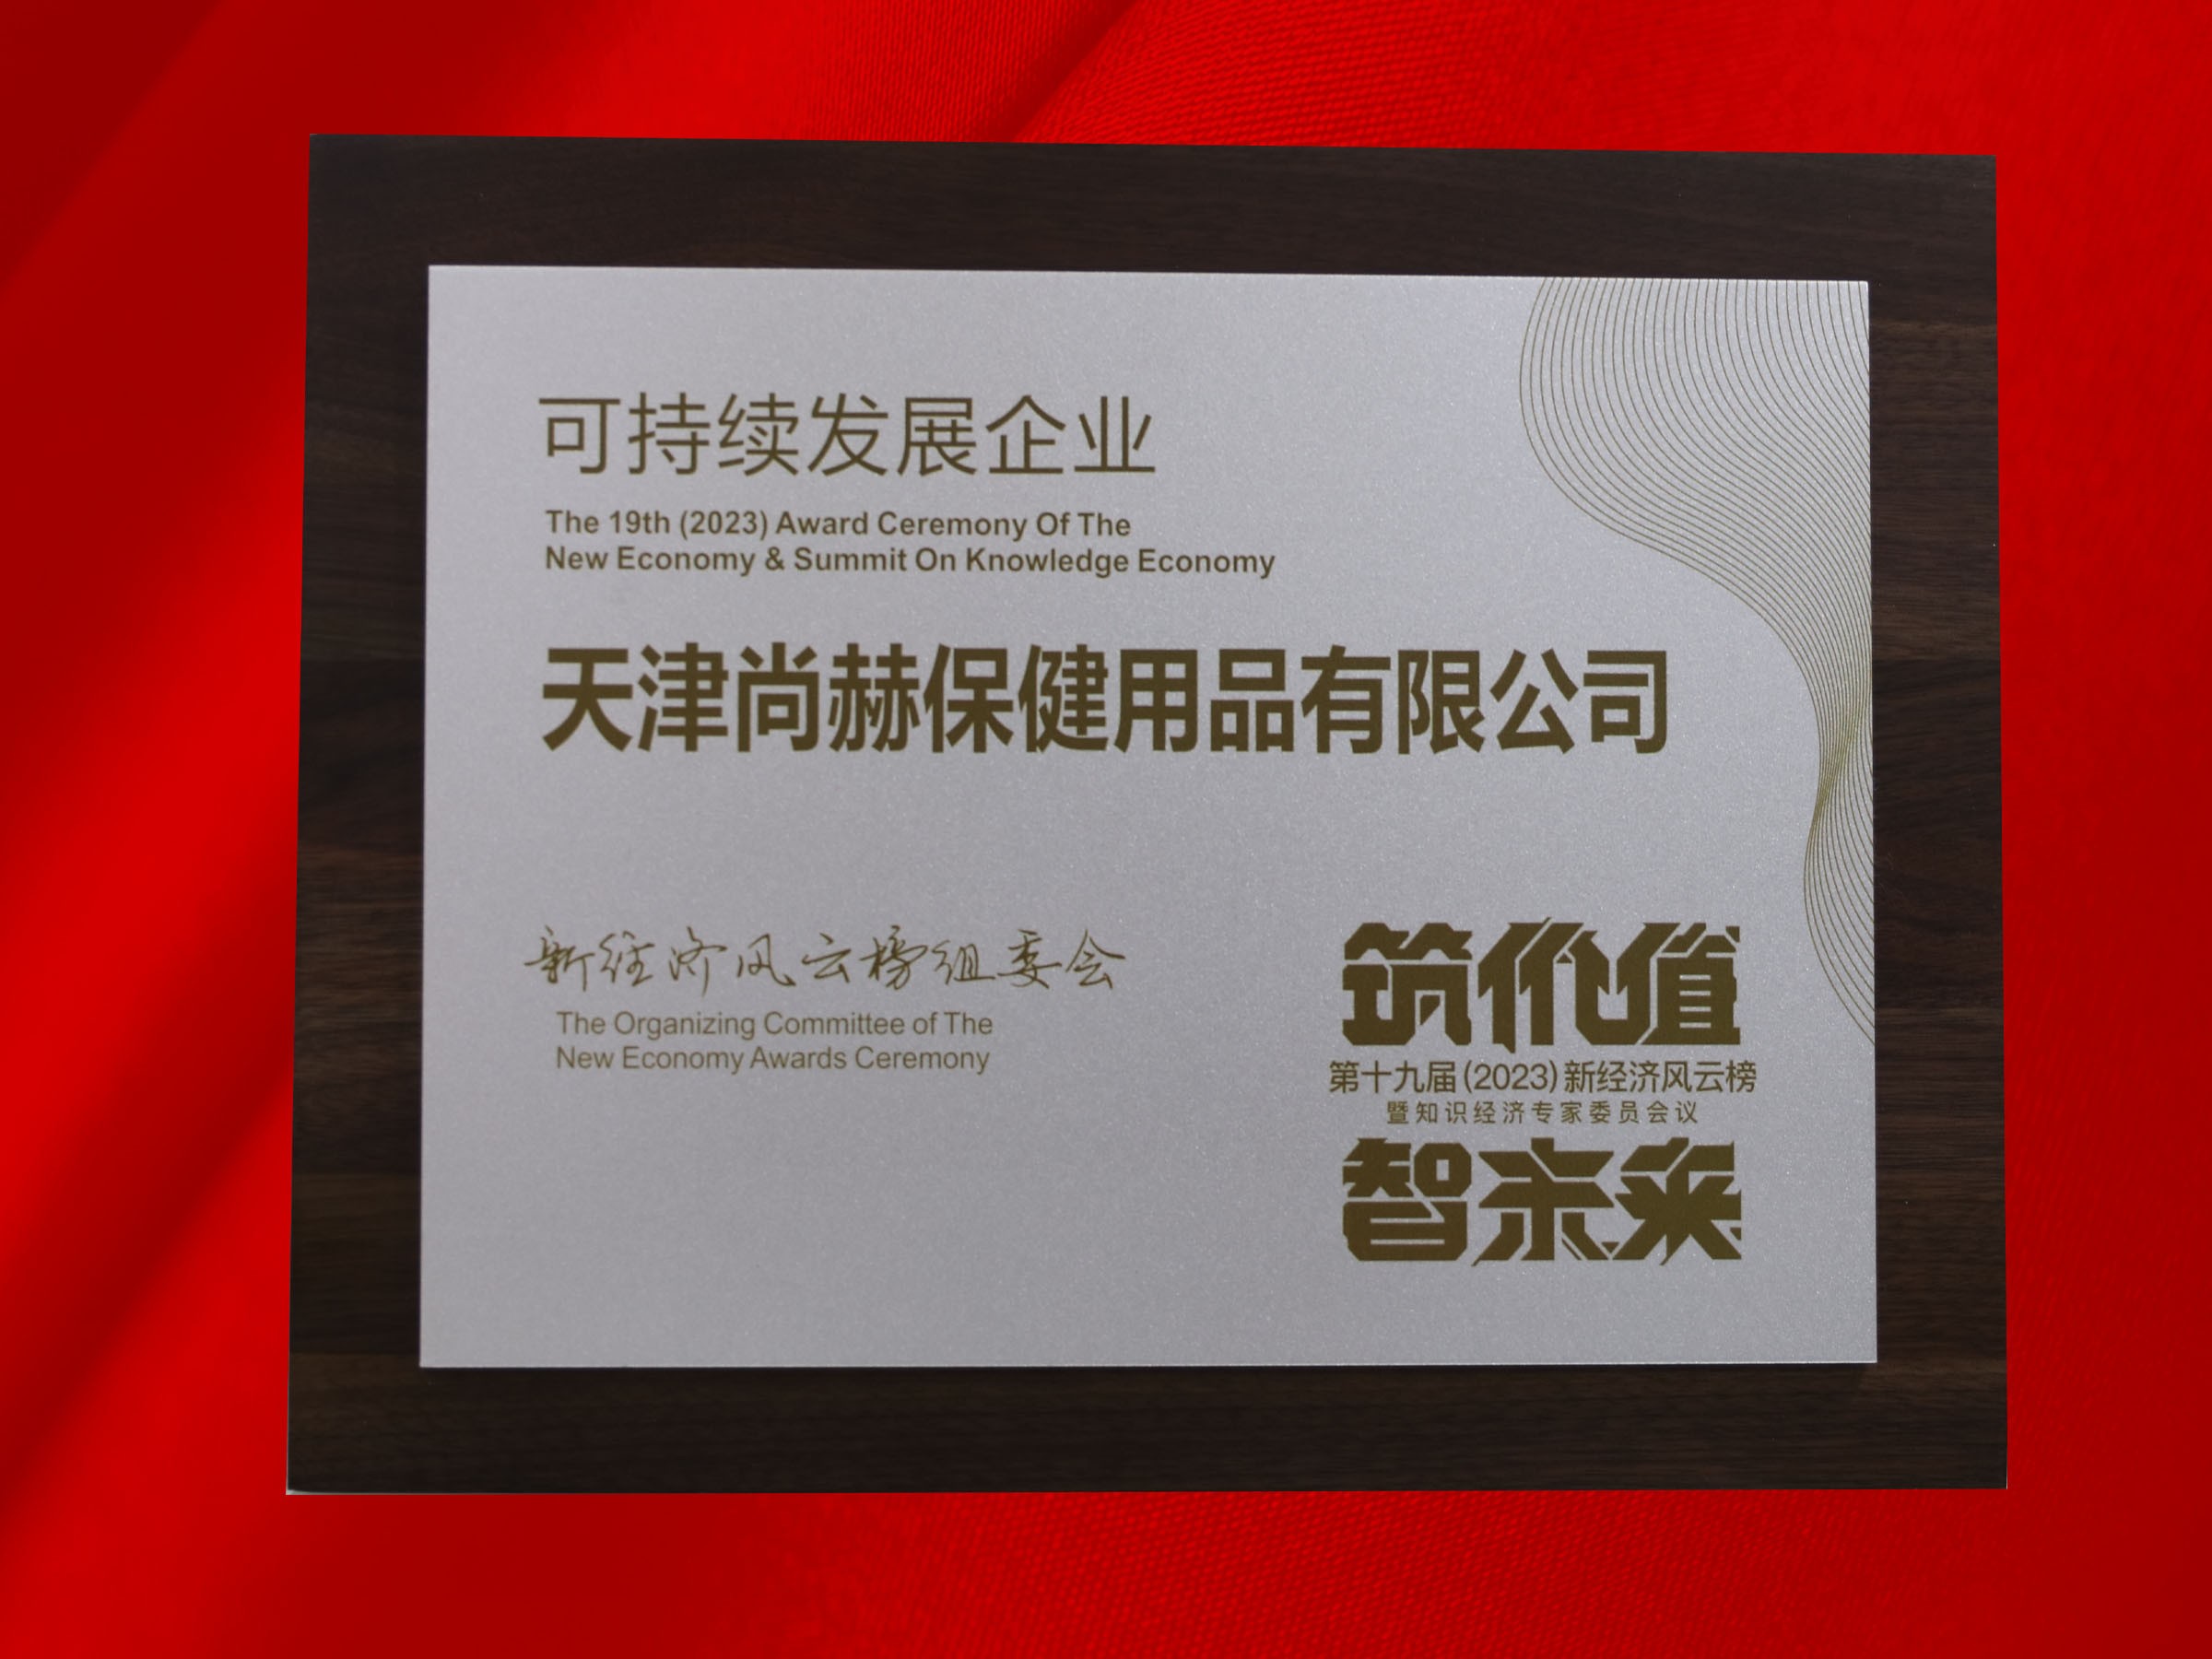 立博登录（中国）有限公司官网公司荣获-第十九届新经济风云榜可持续发展企业奖